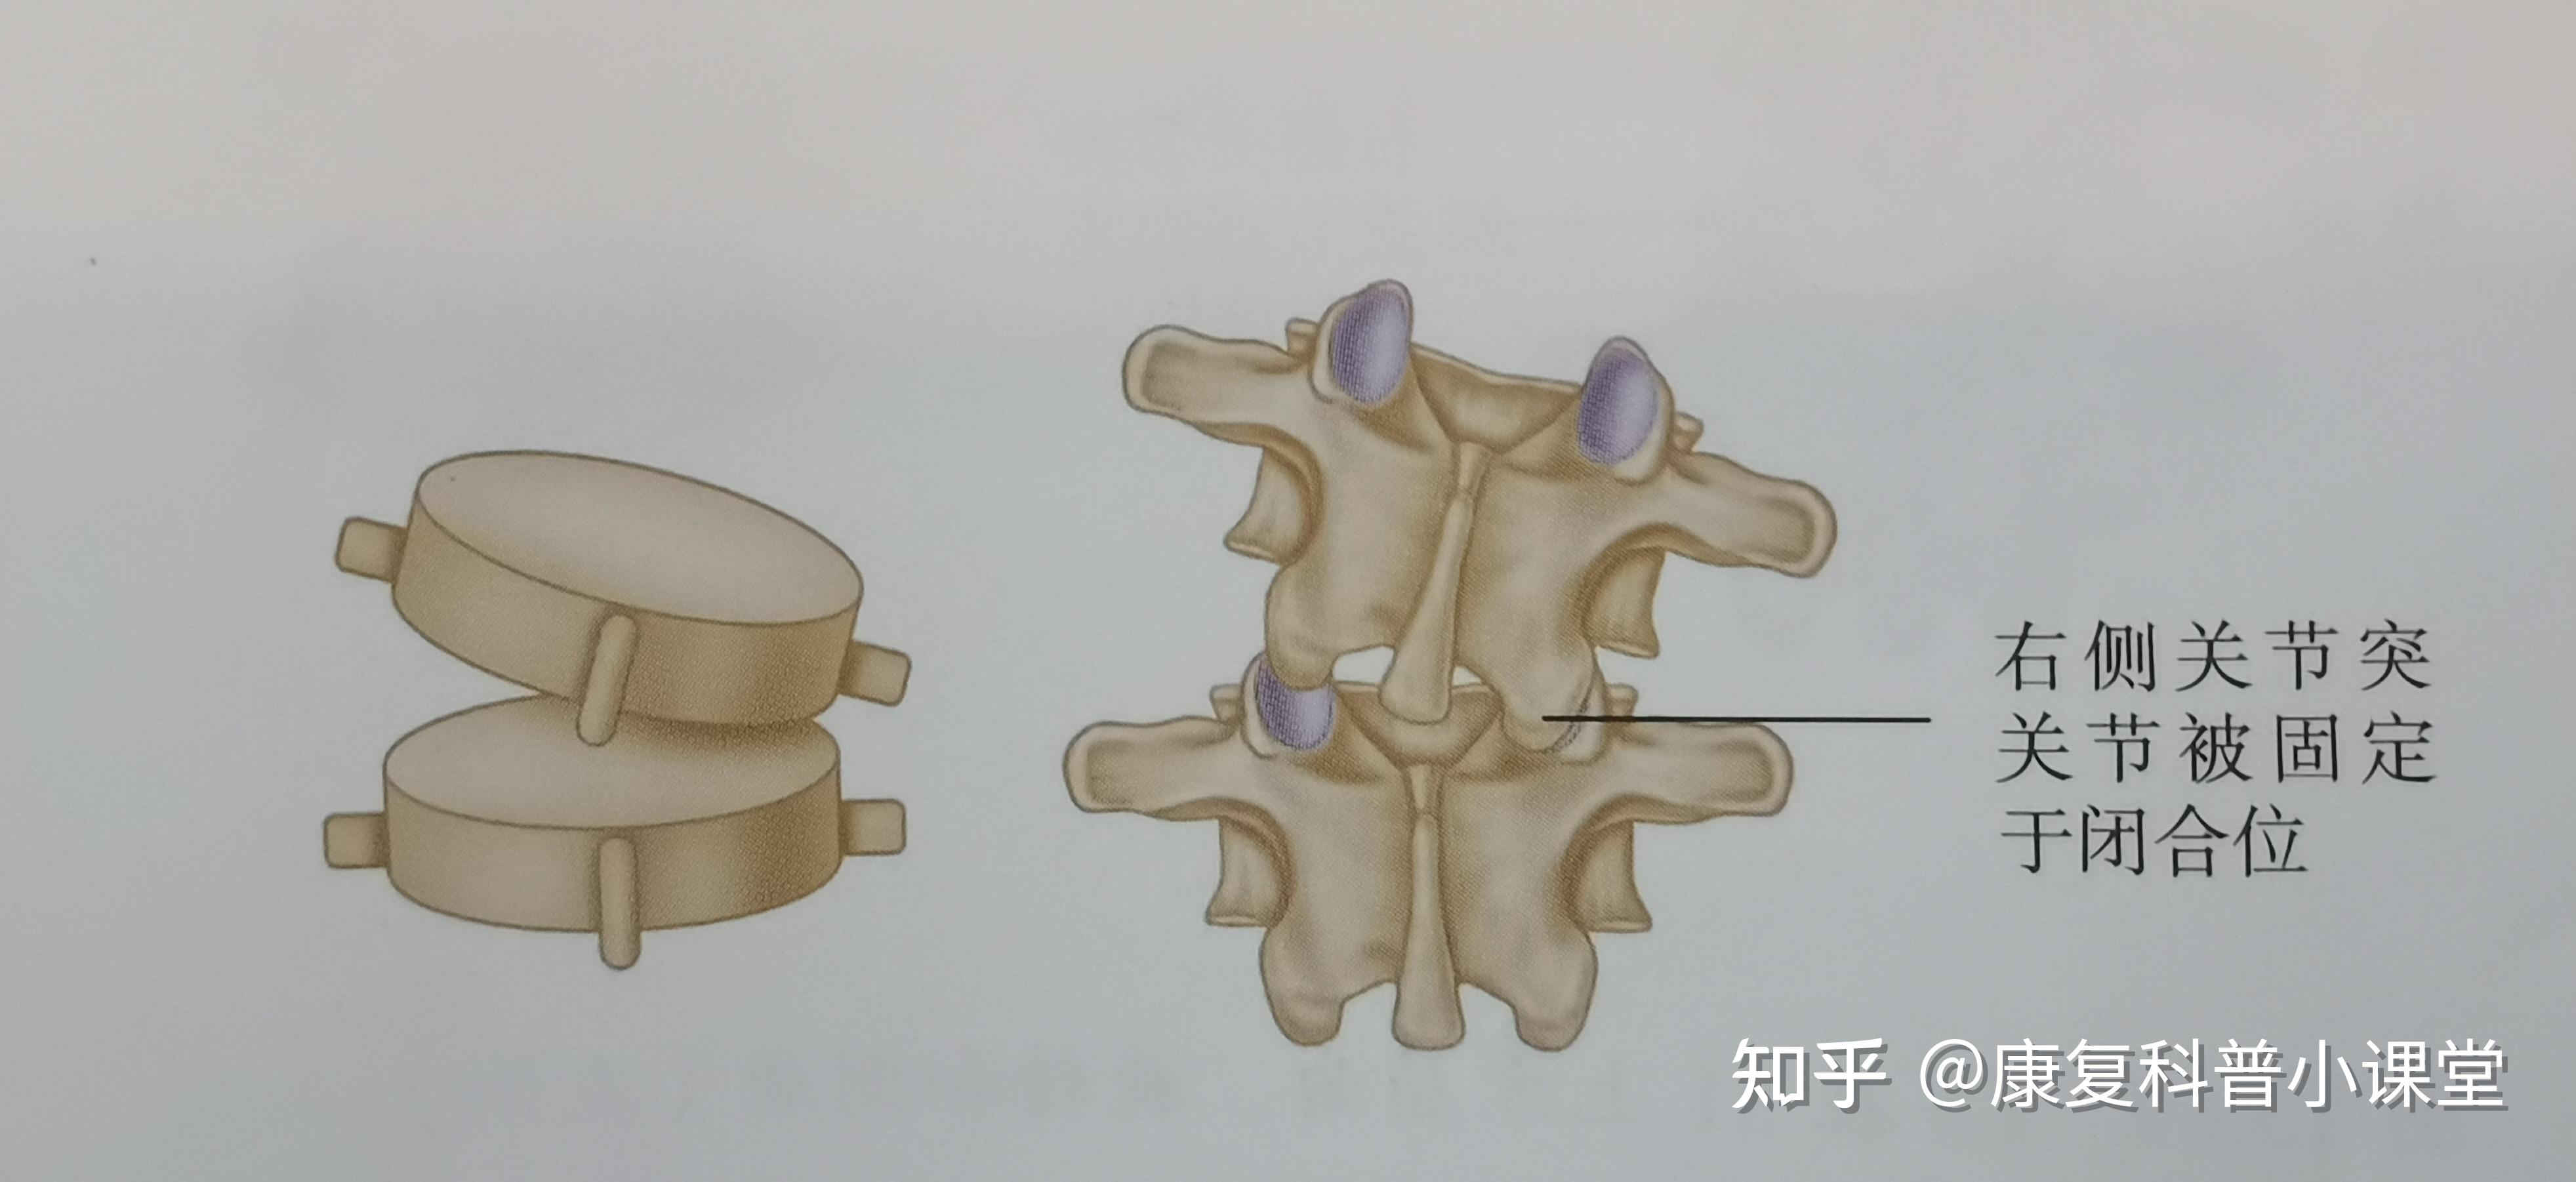 使腰椎向后侧屈,以打开左侧本处于闭合位置的l5/s1关节突关节